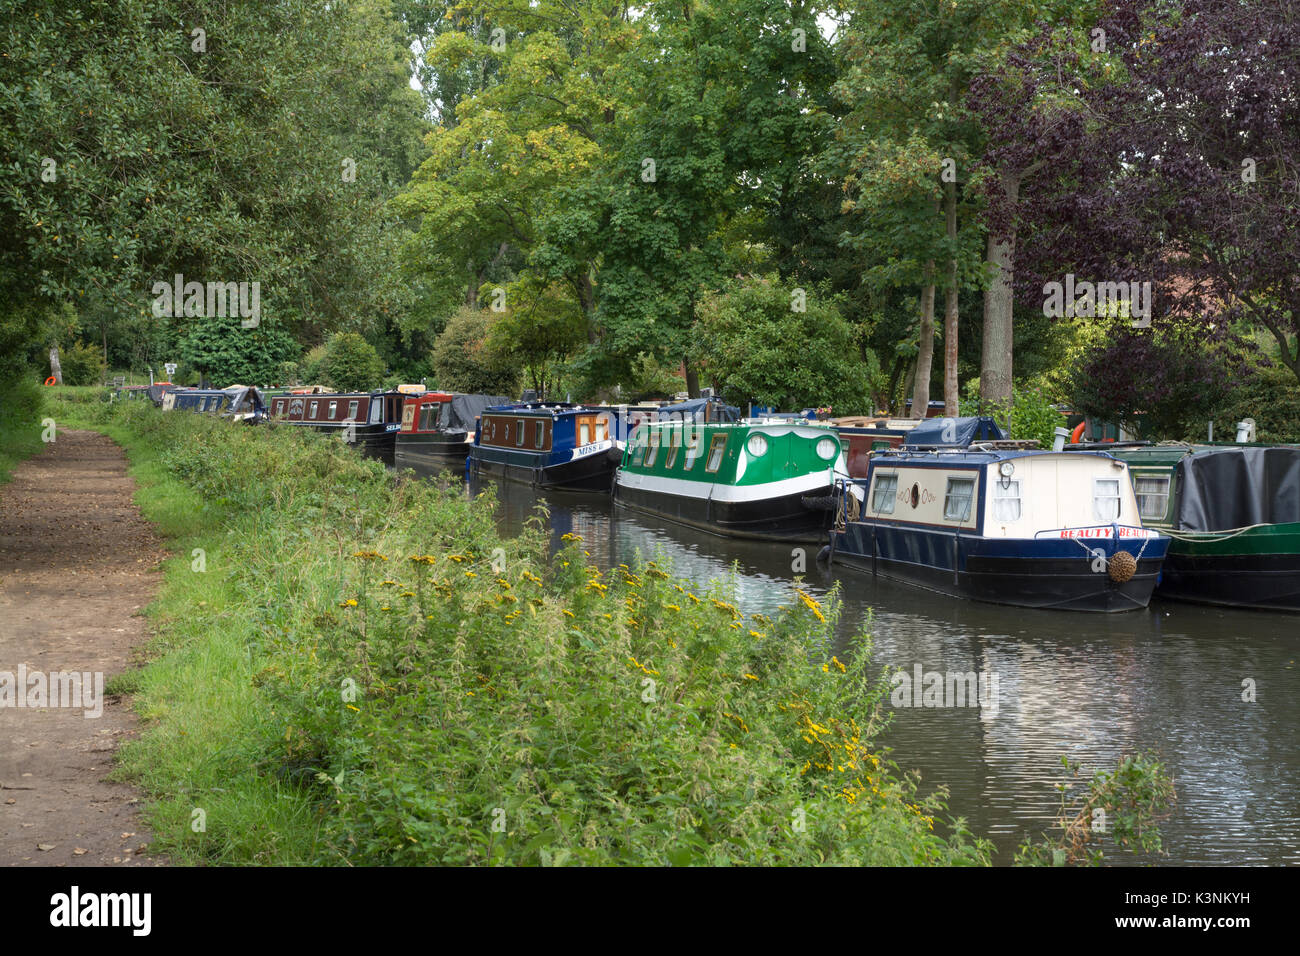 Narrowboats moored near Farncombe Boat House at Godalmin in Surrey, UK Stock Photo